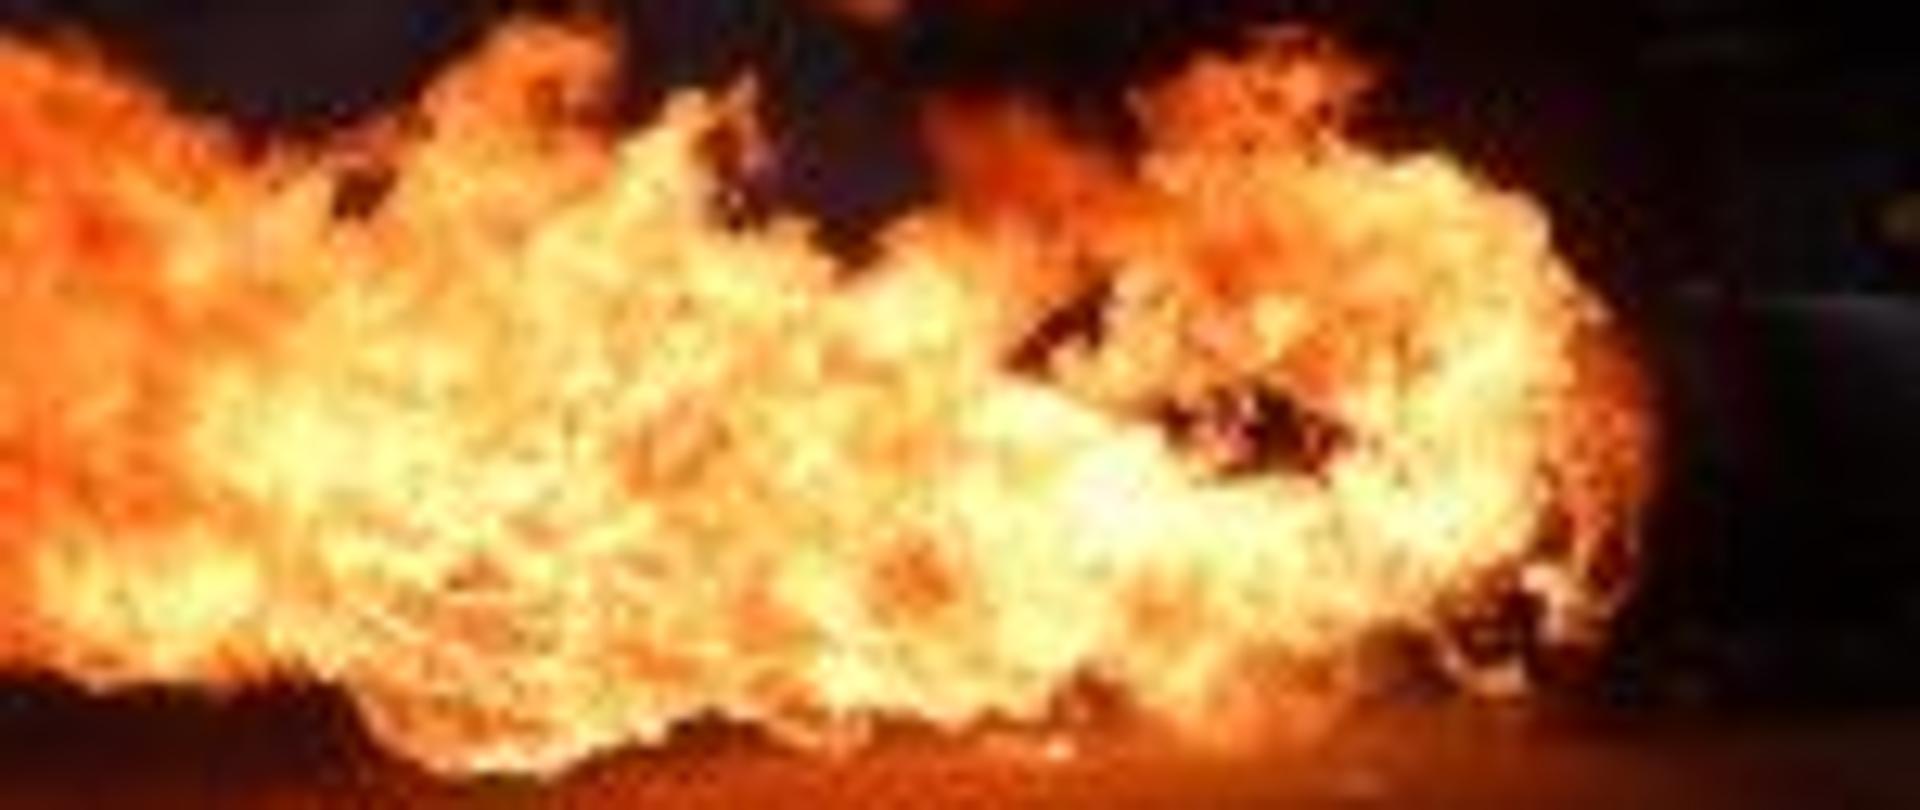 Zdjęcie przestawia podmuch ognia nawiązujący do żywiołu z jakim podczas swojej służby mierzą się strażacy